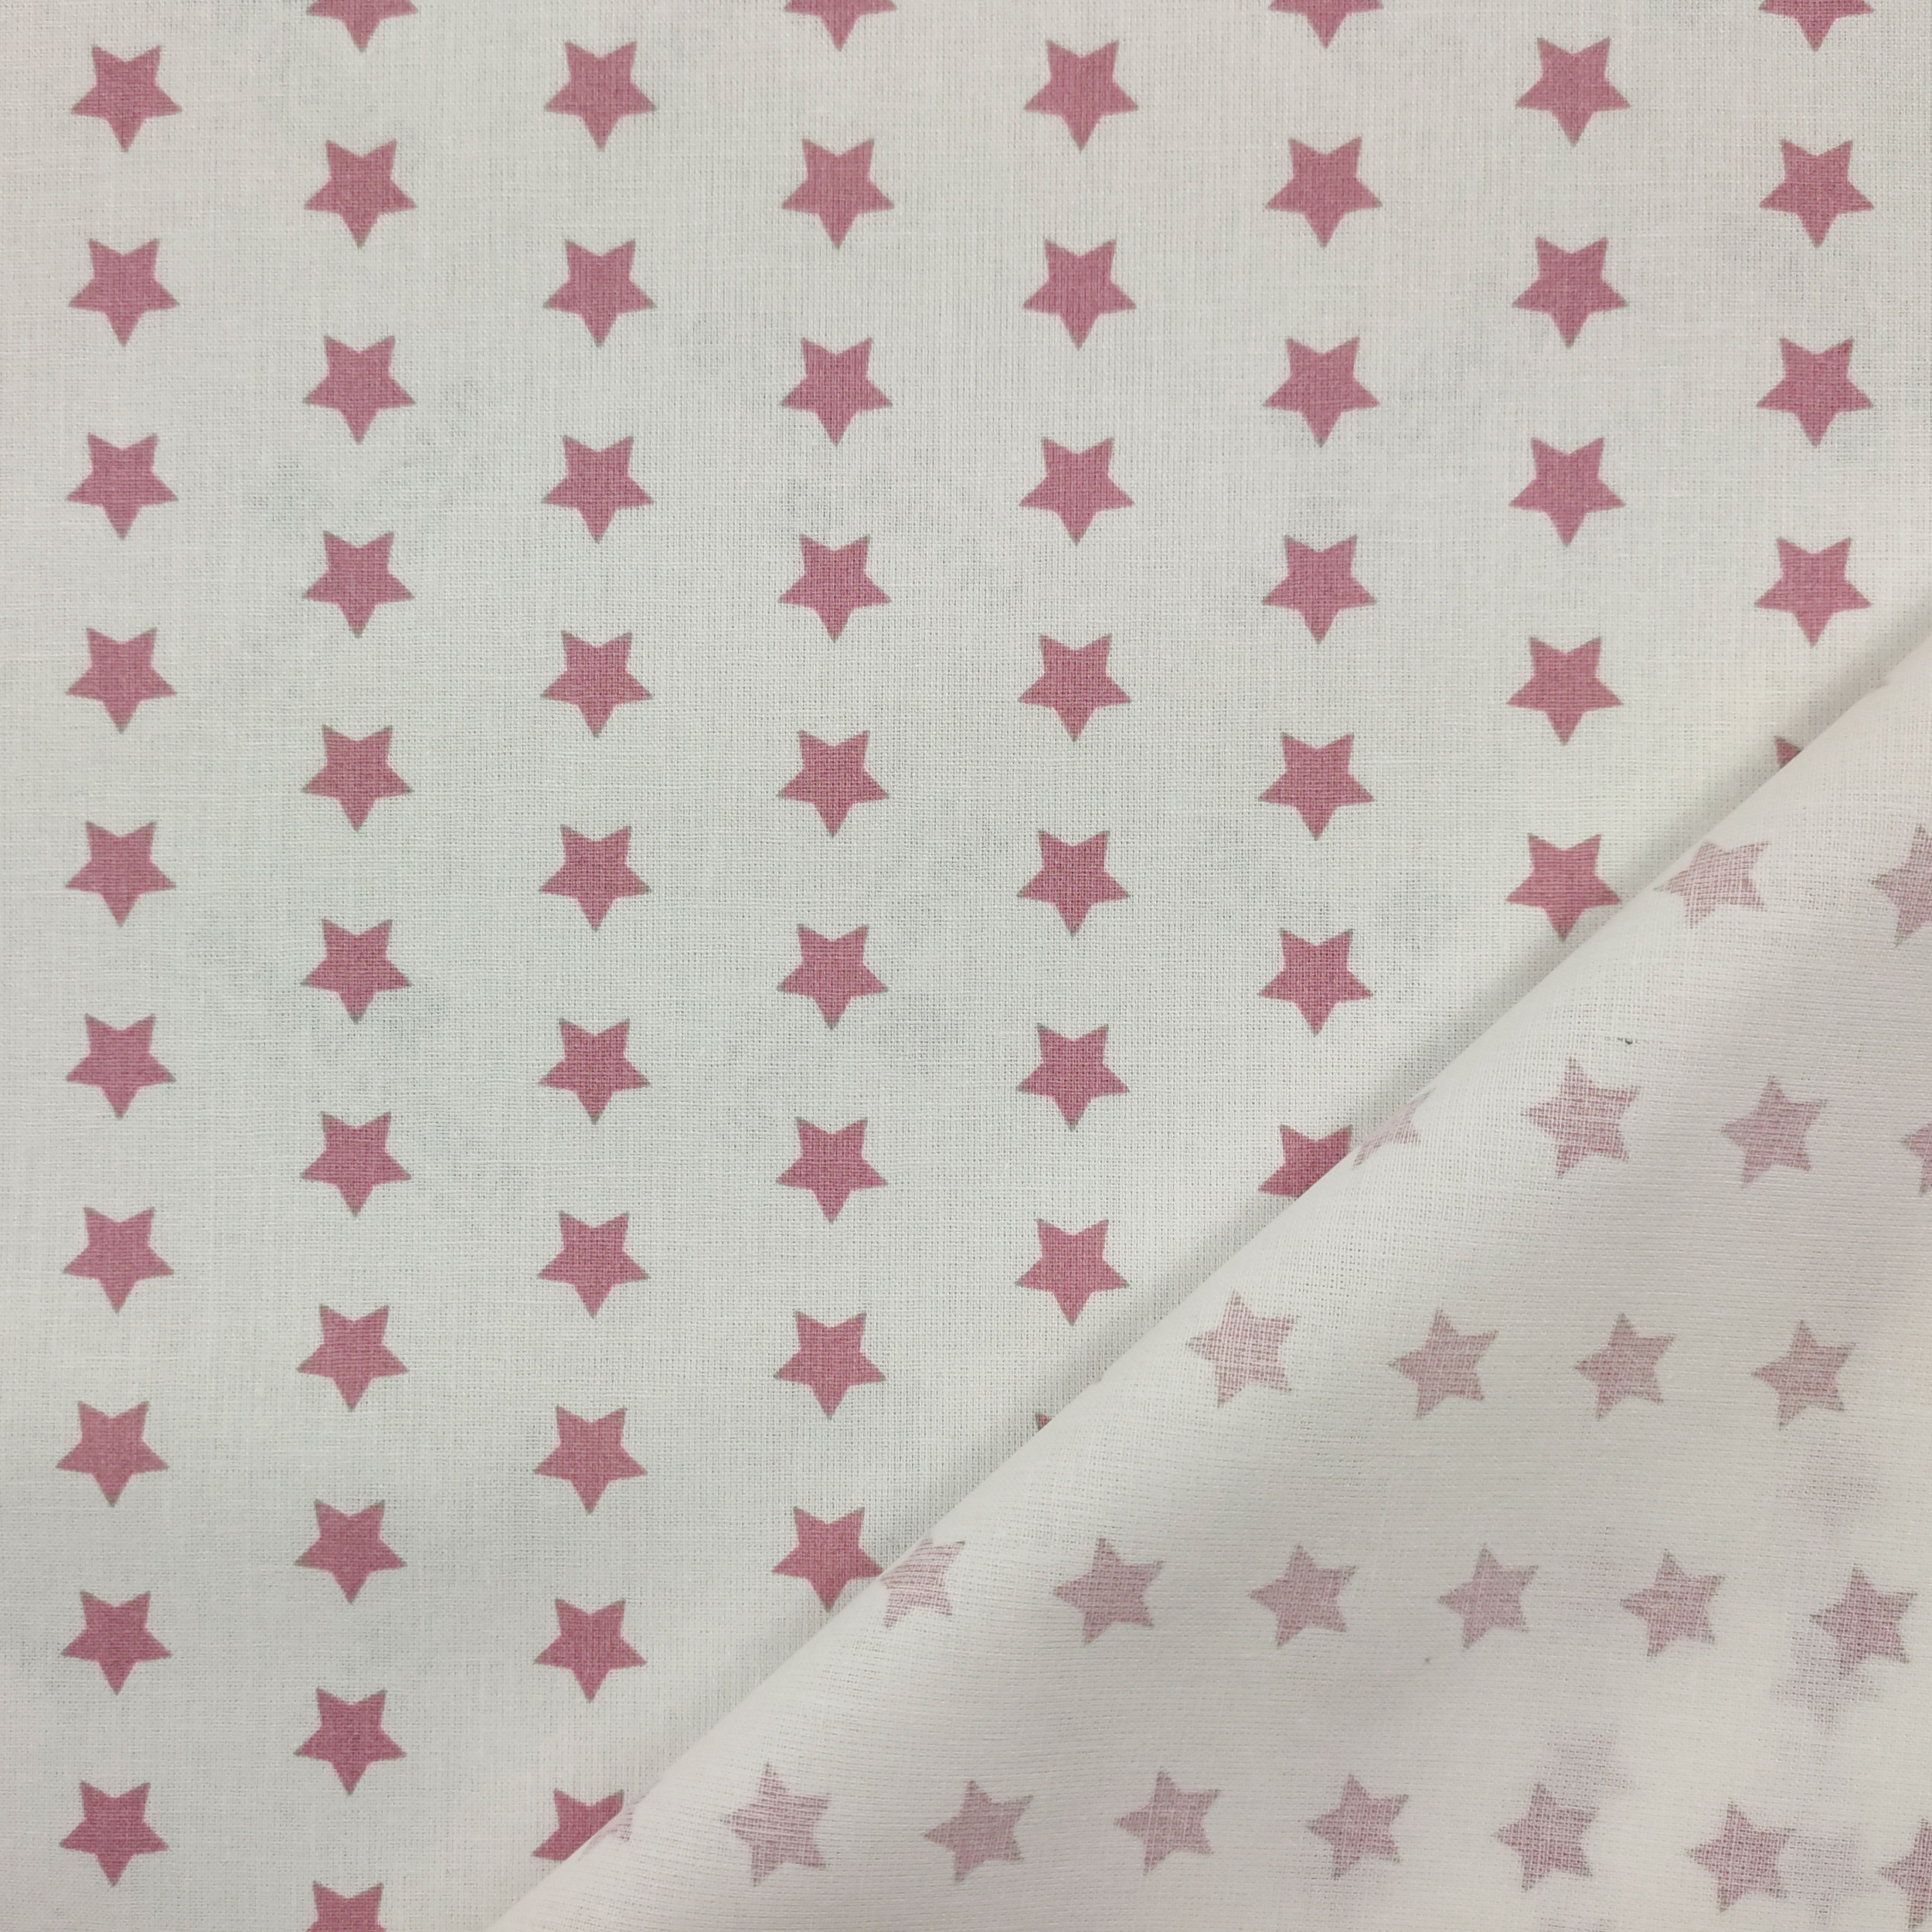 cotone con stelle rosa antico sfondo bianco